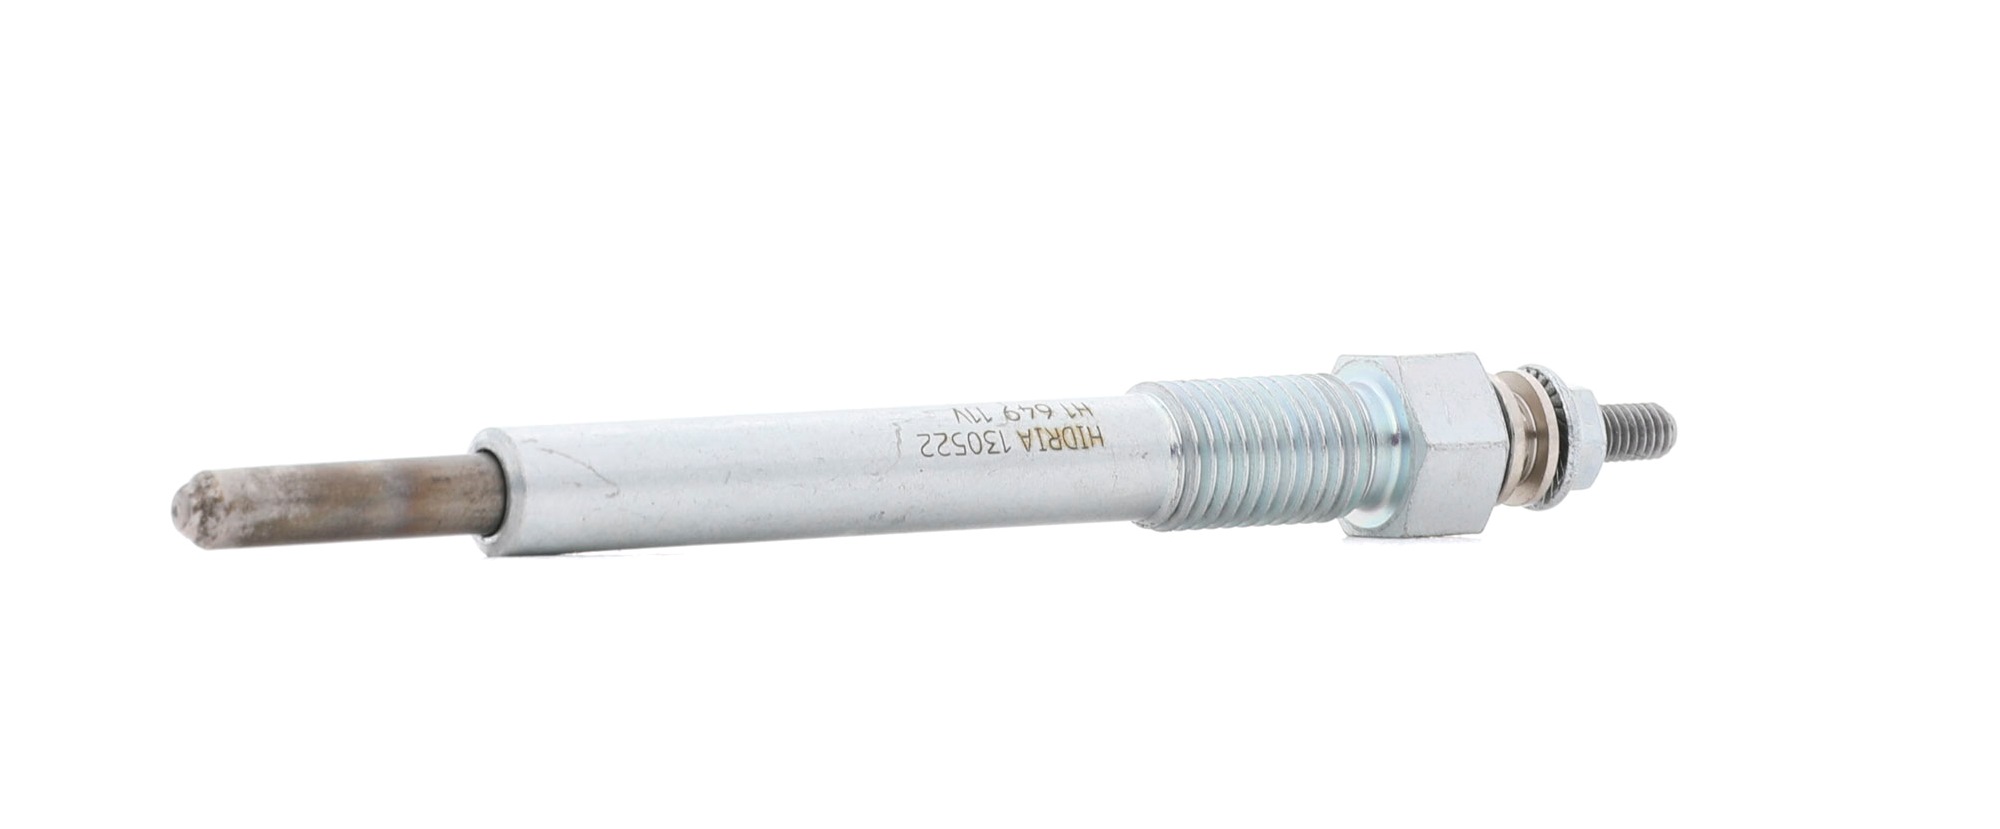 HIDRIA H1 649 Glow plug 11V M10x1,25, 113 mm, 119